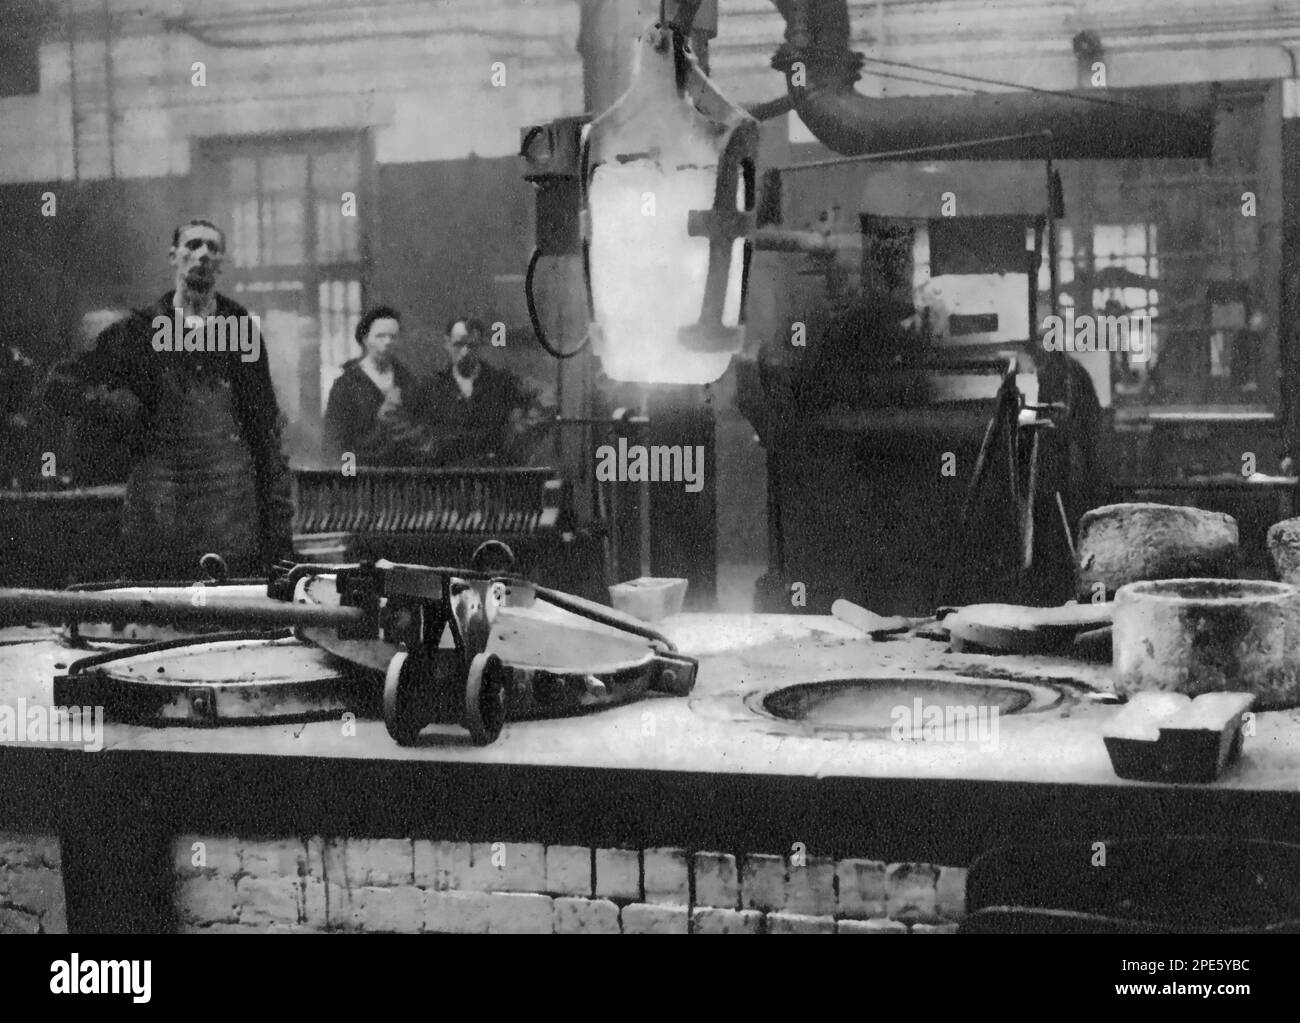 Royal Mint, Tower Hill, London, c1933. Ein Schmelztiegel aus geschmolzenem Silber wird aus dem Ofen gehoben und zur Maschine getragen, die das flüssige Metall umrührt, bevor es in Formen gegossen wird. Stockfoto